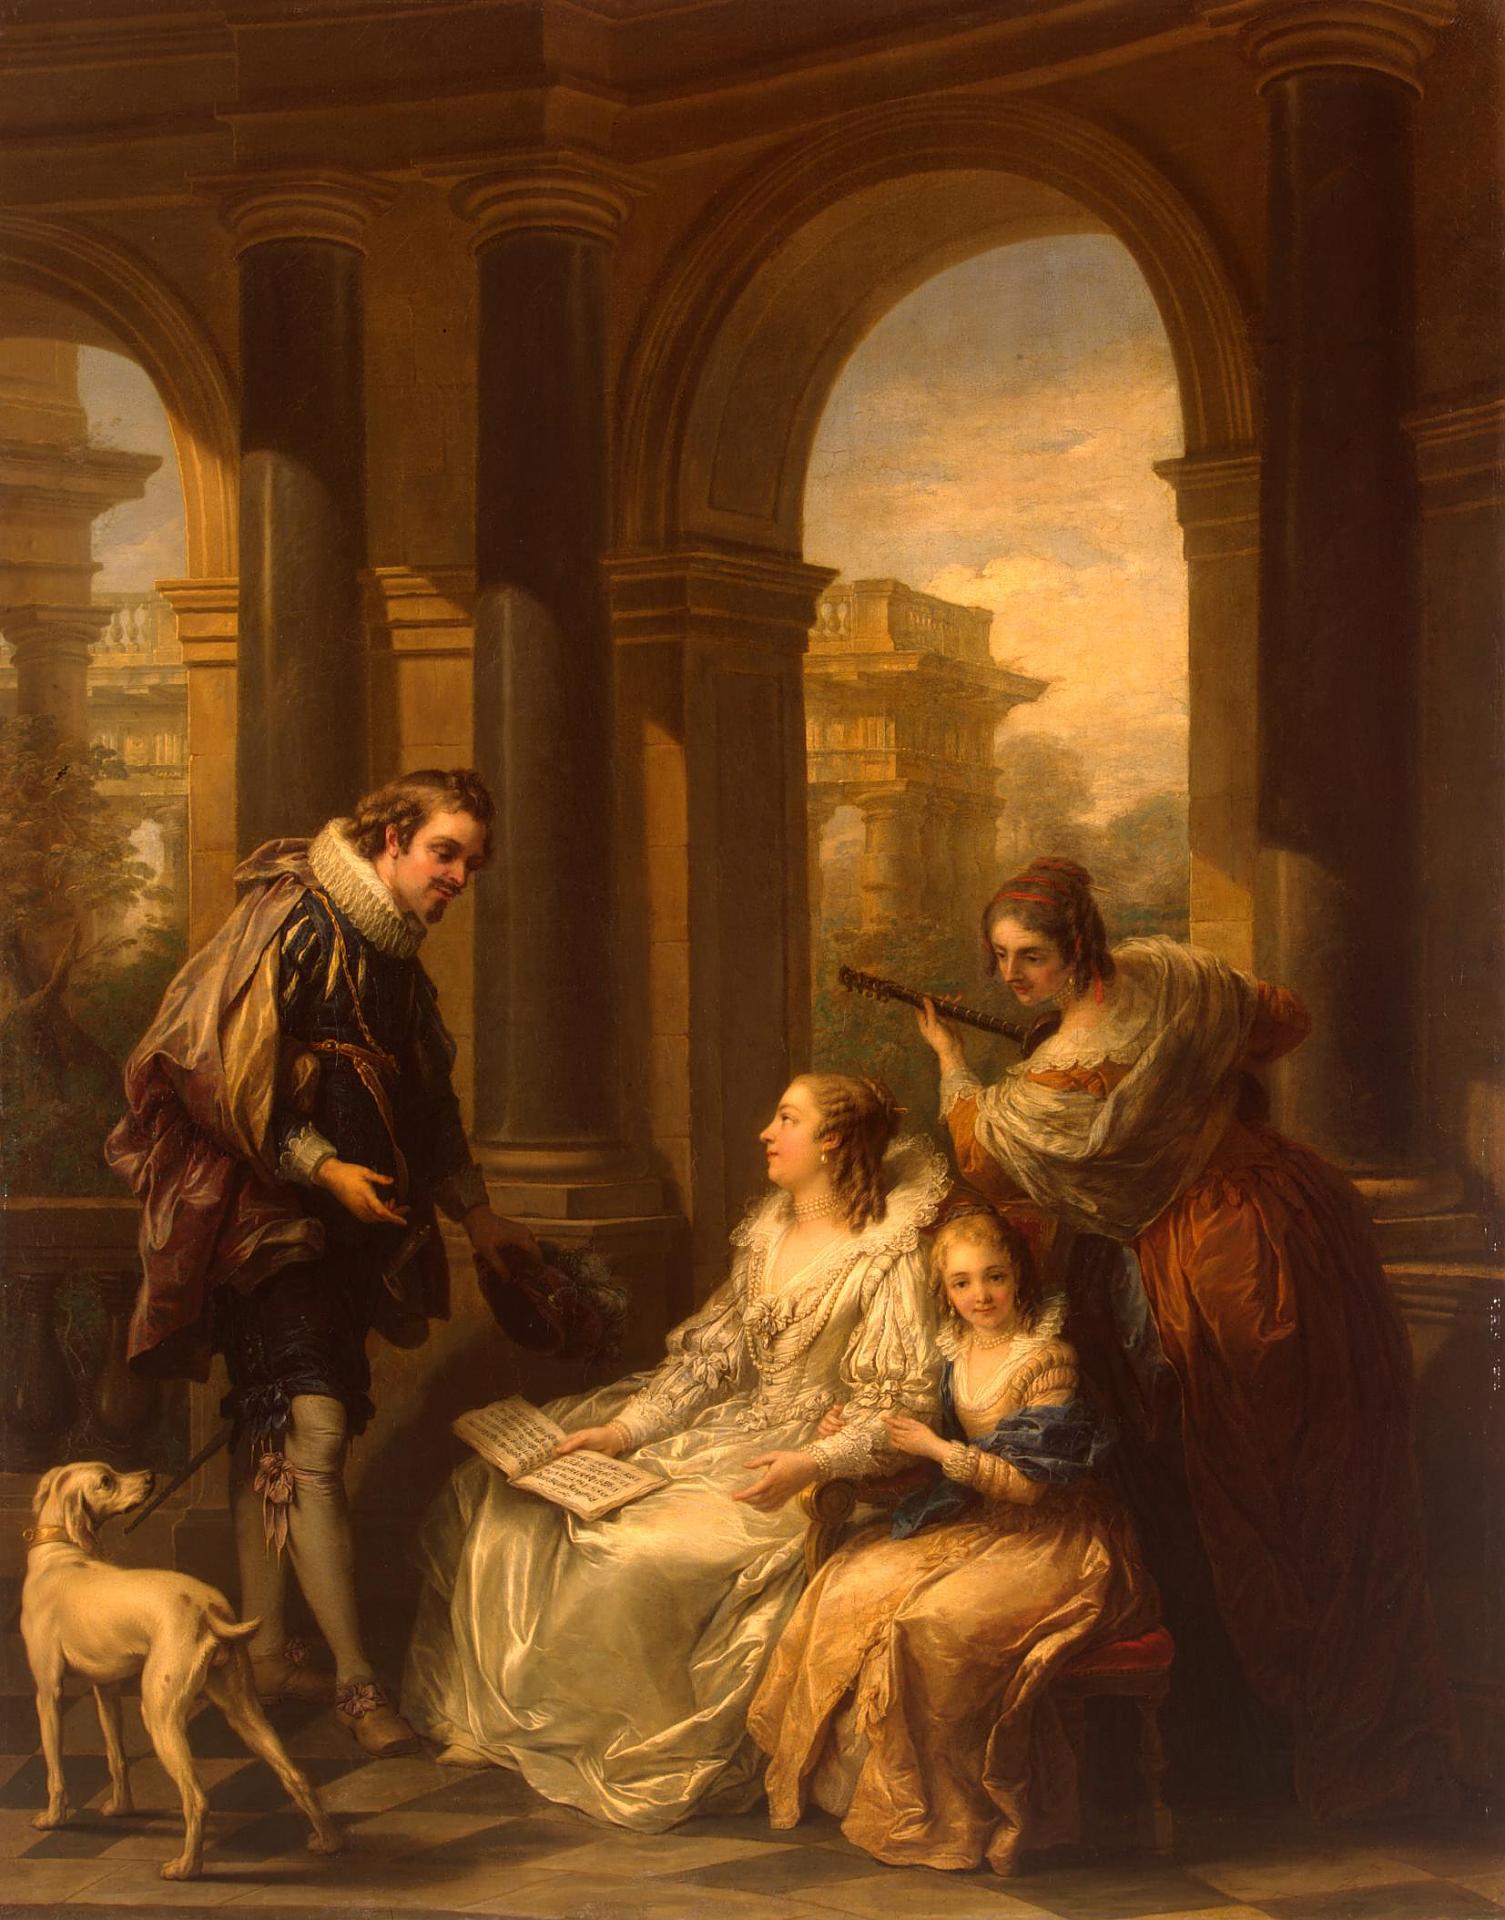 Карл (Шарль-Андре) Ванлоо. "Испанский концерт (Испанское собеседование)". 1754. Эрмитаж, Санкт-Петербург.